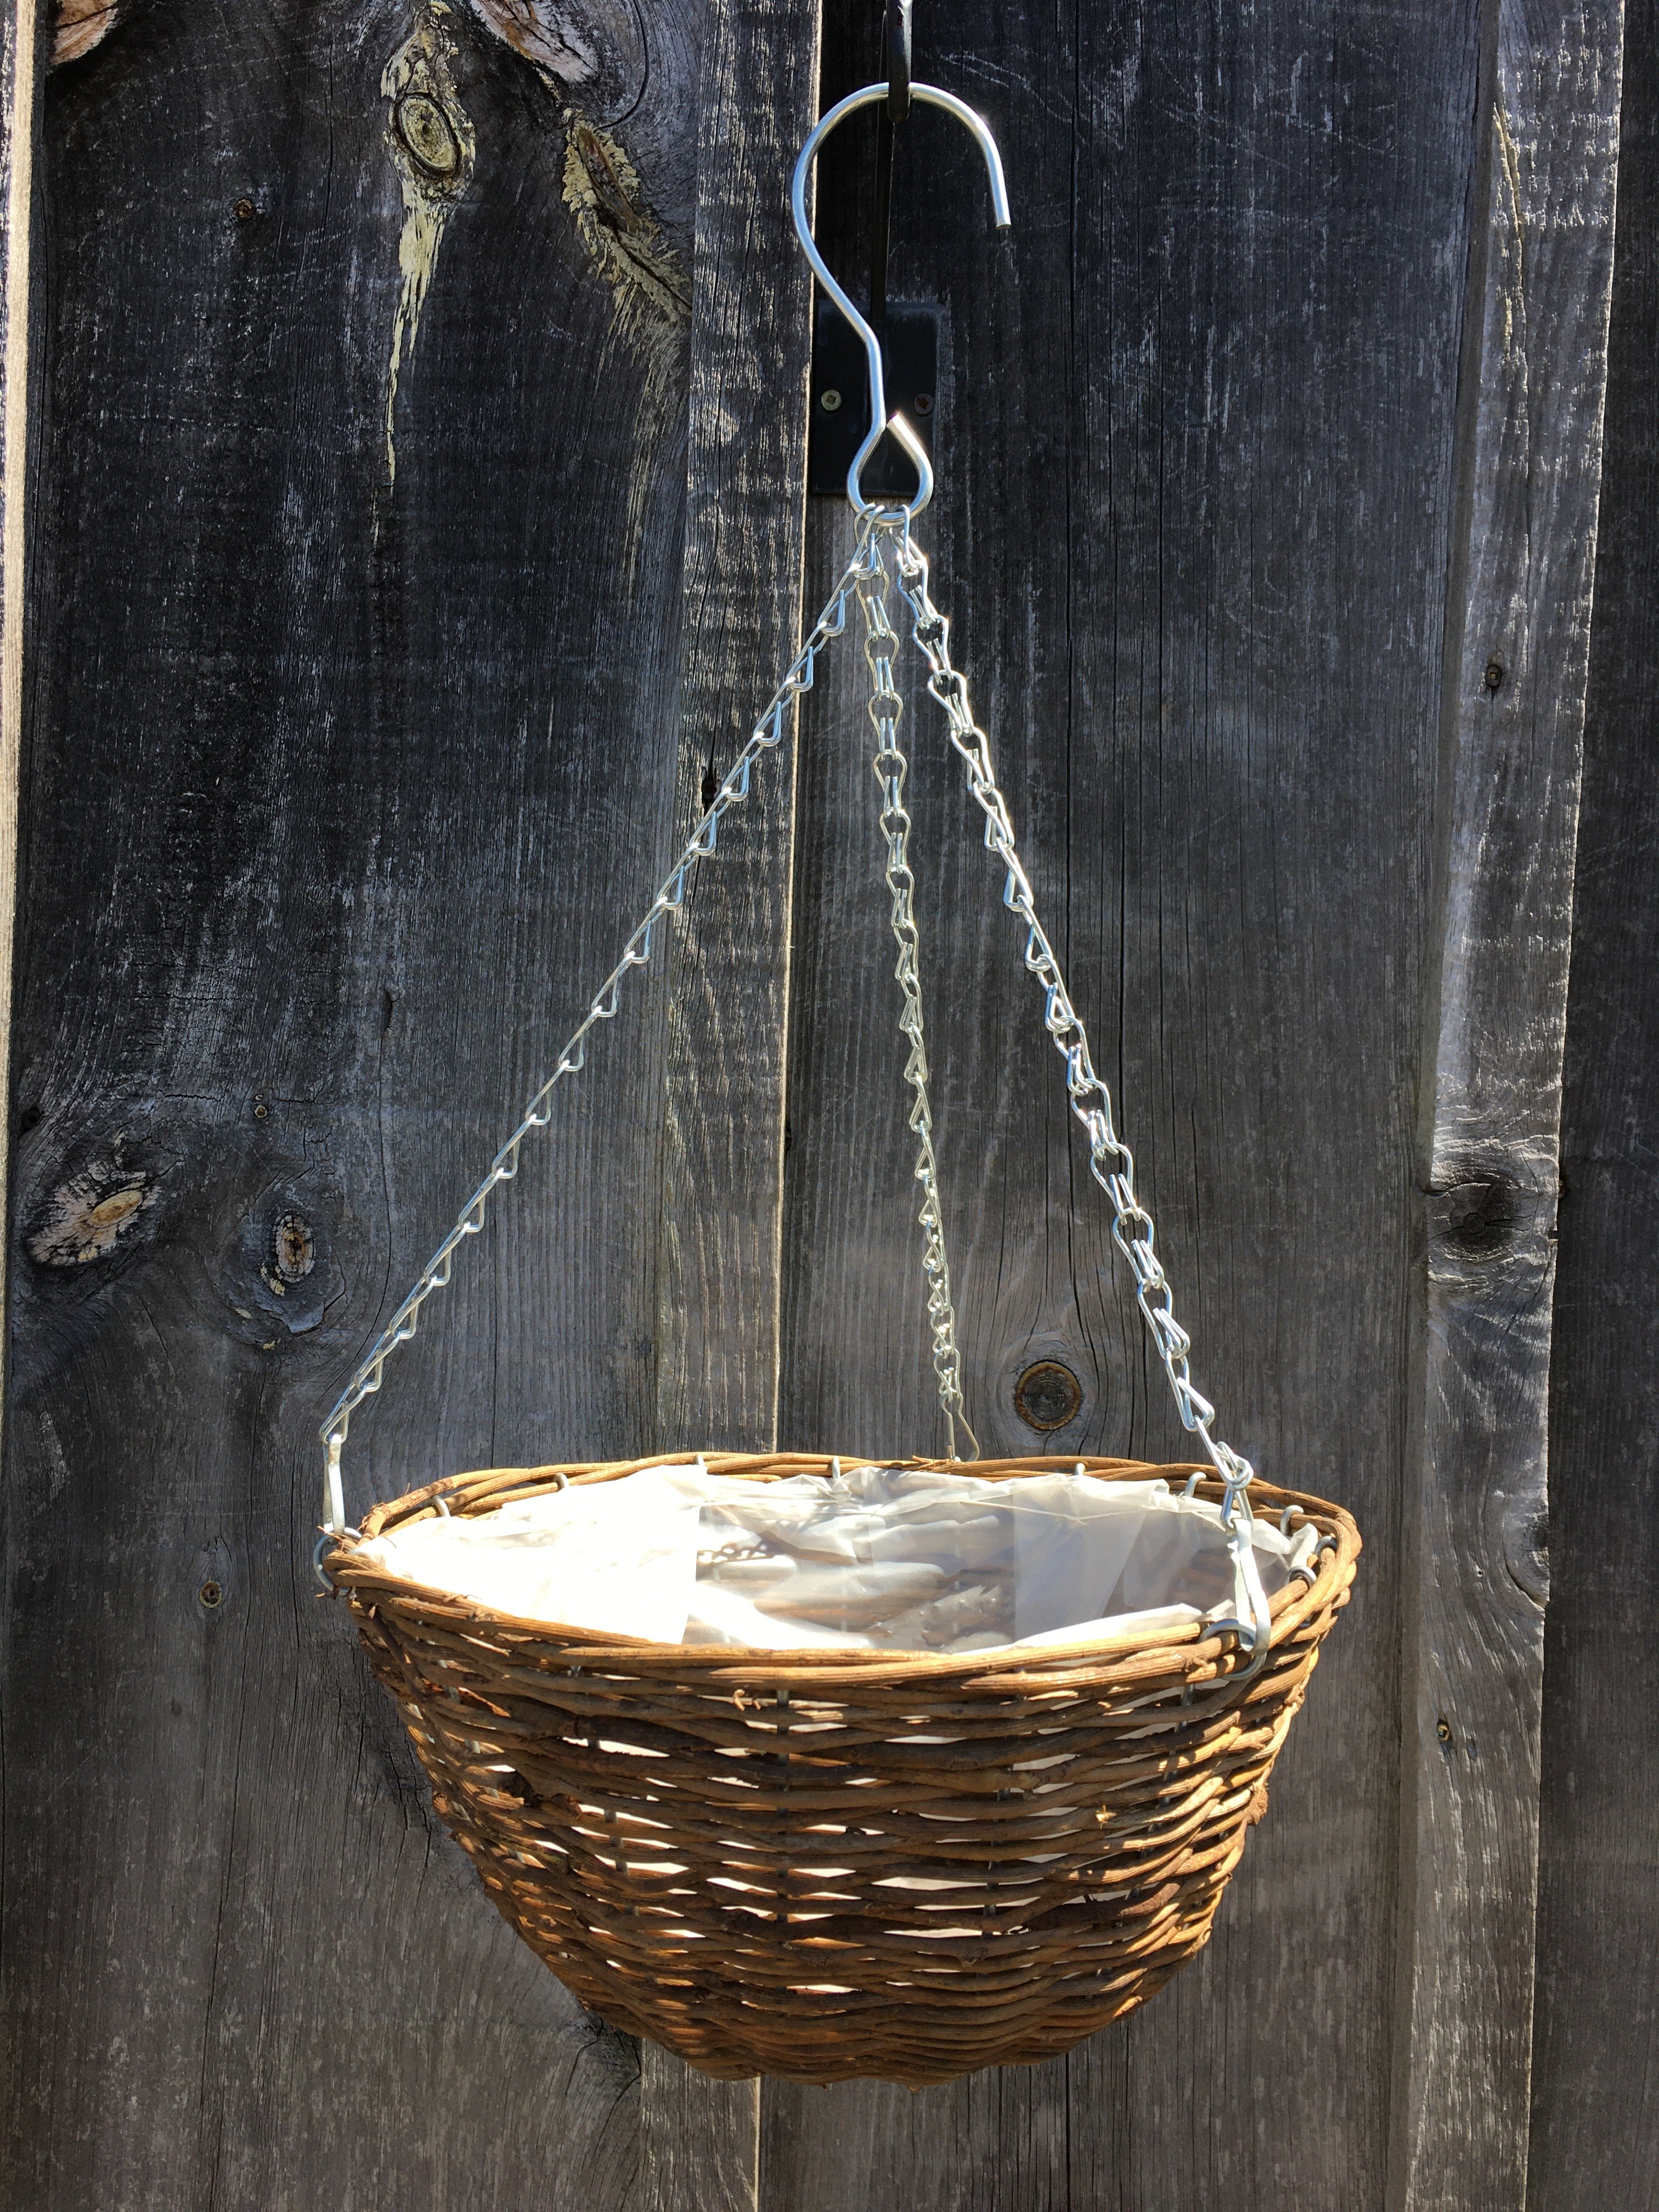 Black Willow Wicker Hanging Basket